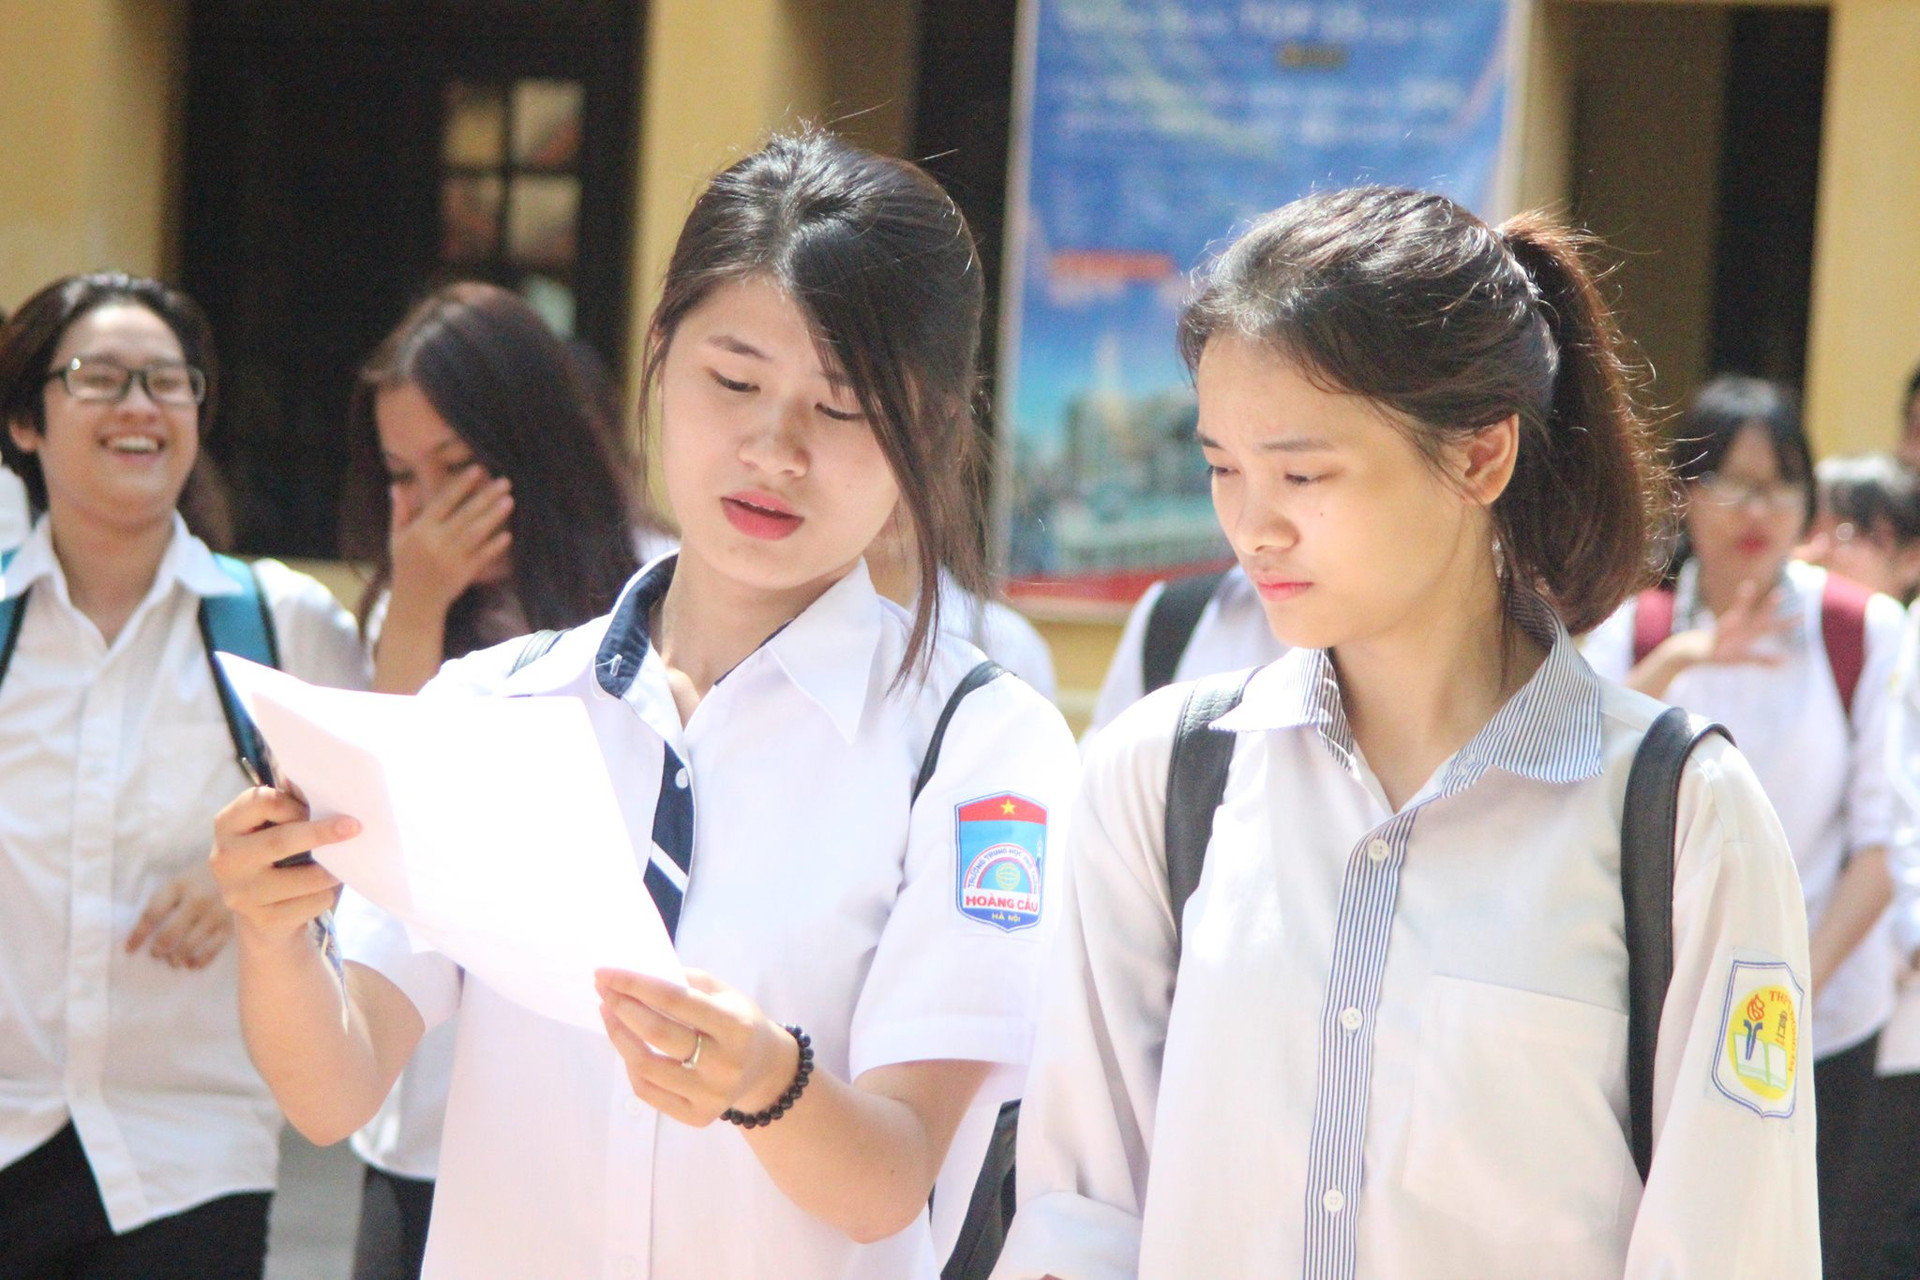 Cụm thi Hưng Yên: Dự kiến ngày 3/7 sẽ hoàn thành chấm thi THPT quốc gia 2017